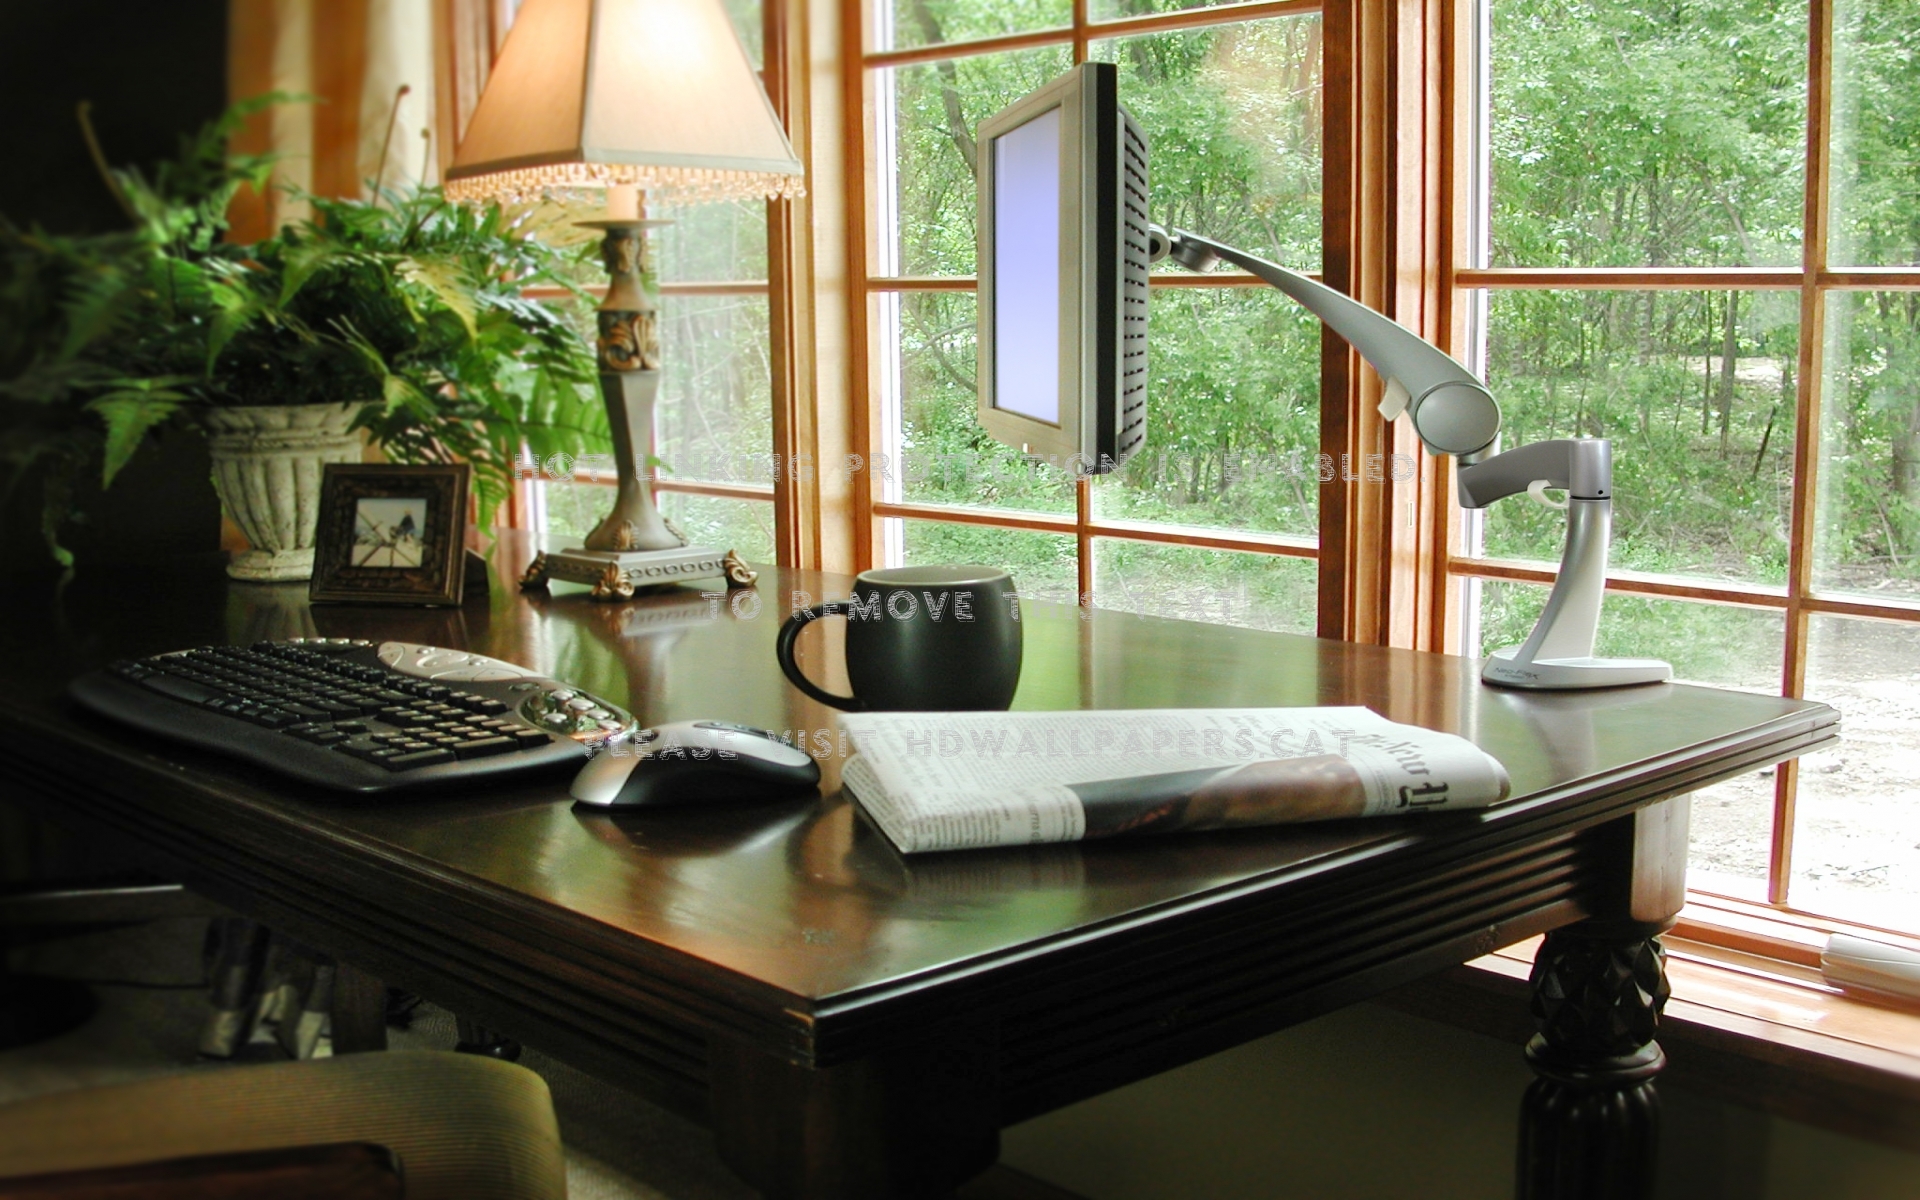 Cozy Office Space Computer Desk Coffee - Office Desk Decor Zen - HD Wallpaper 